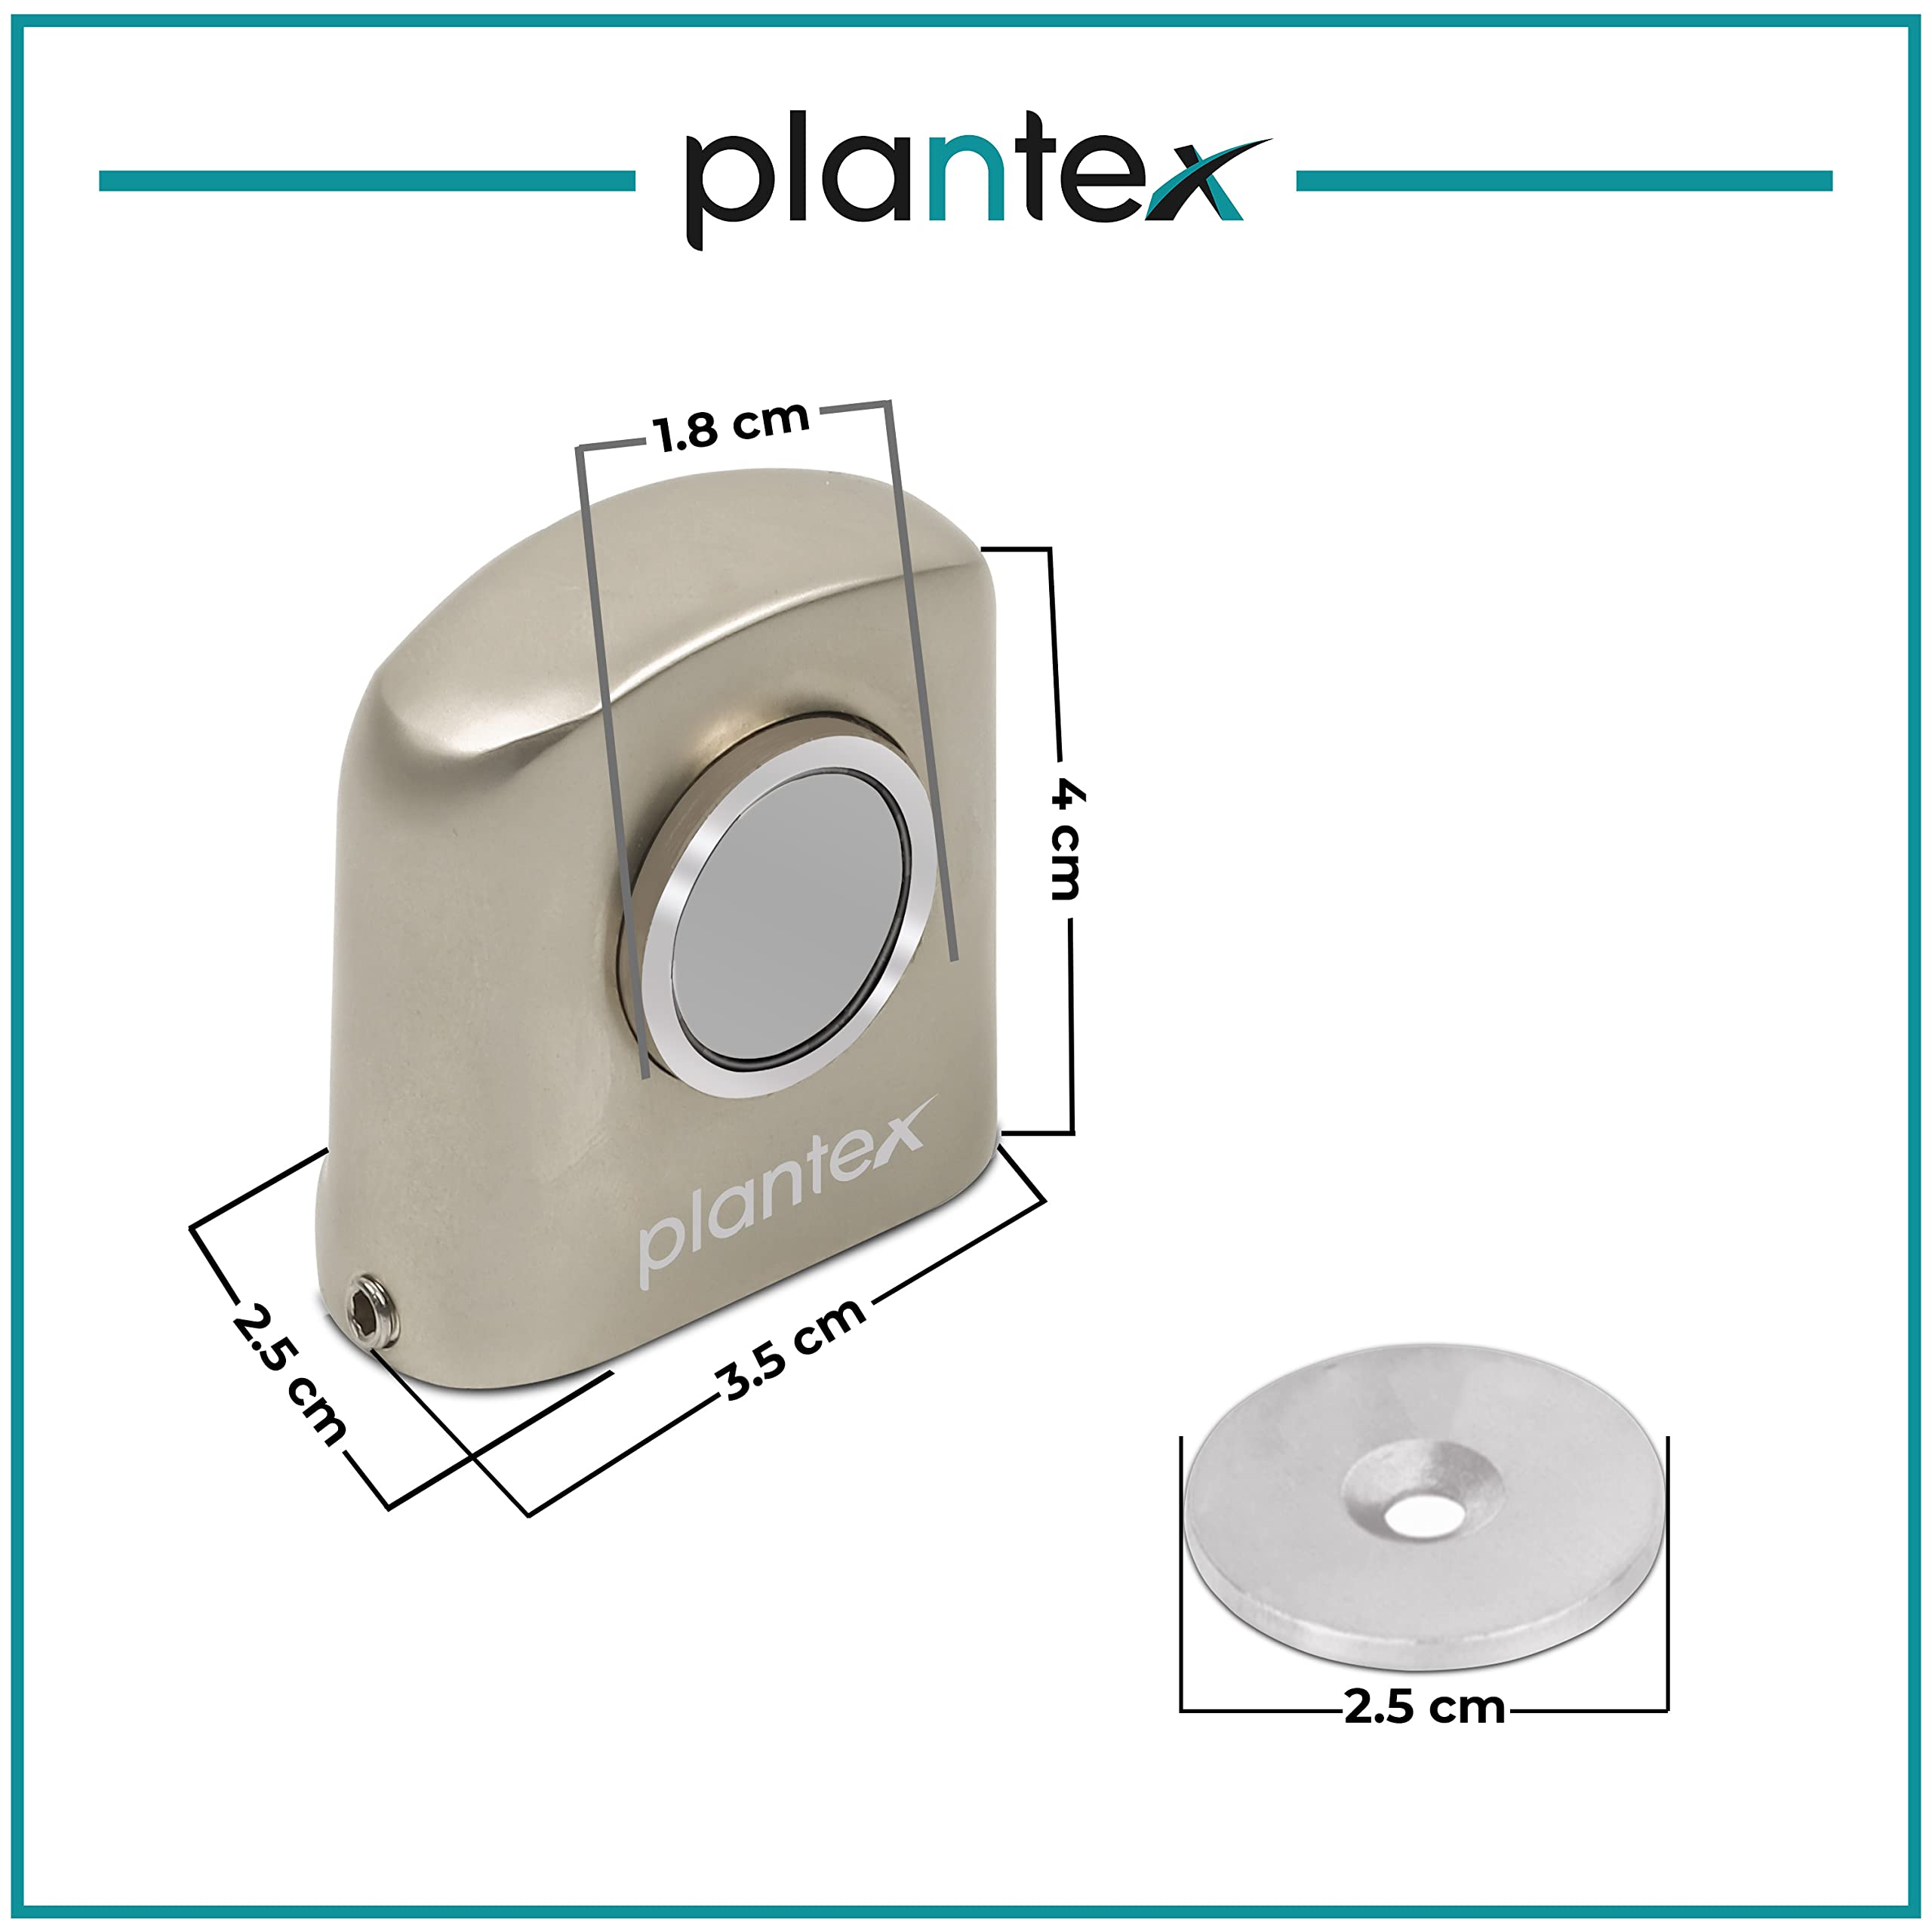 Plantex Heavy Duty Door Magnet Stopper/Door Catch Holder for Home/Office/Hotel, Floor Mounted Soft-Catcher to Hold Wooden/Glass/PVC Door - Pack of 4 (193 - Satin Matt)